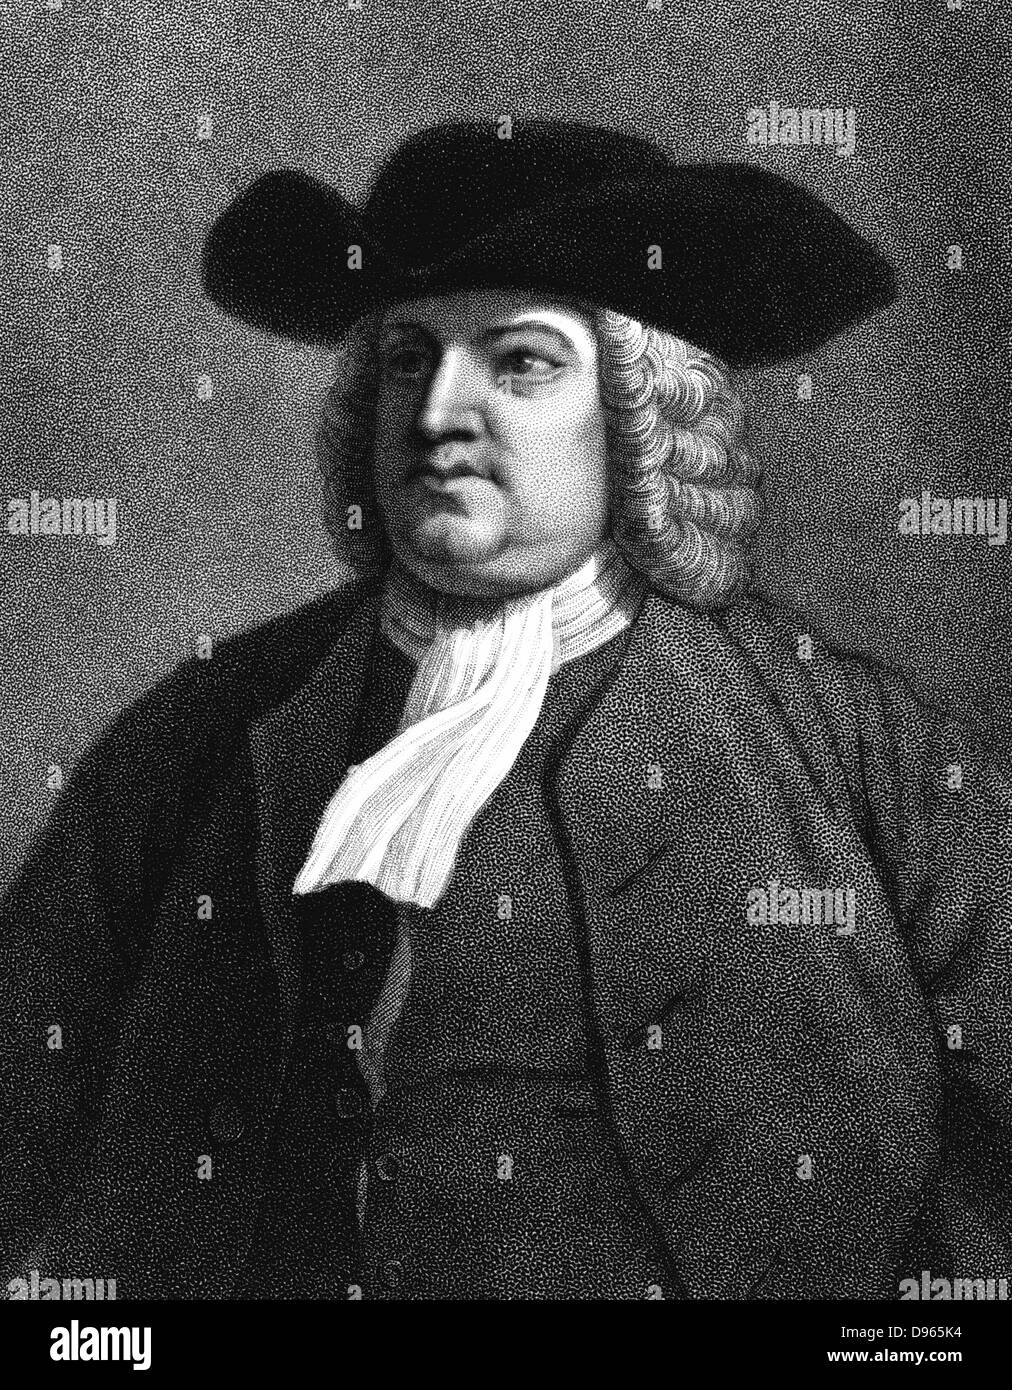 William Penn (1644-1718) Mitglied der Gesellschaft der Freunde, im Volksmund bekannt als Quäker. Etablierte Pennsylvania, Amerika. Gravur 1837. Stockfoto